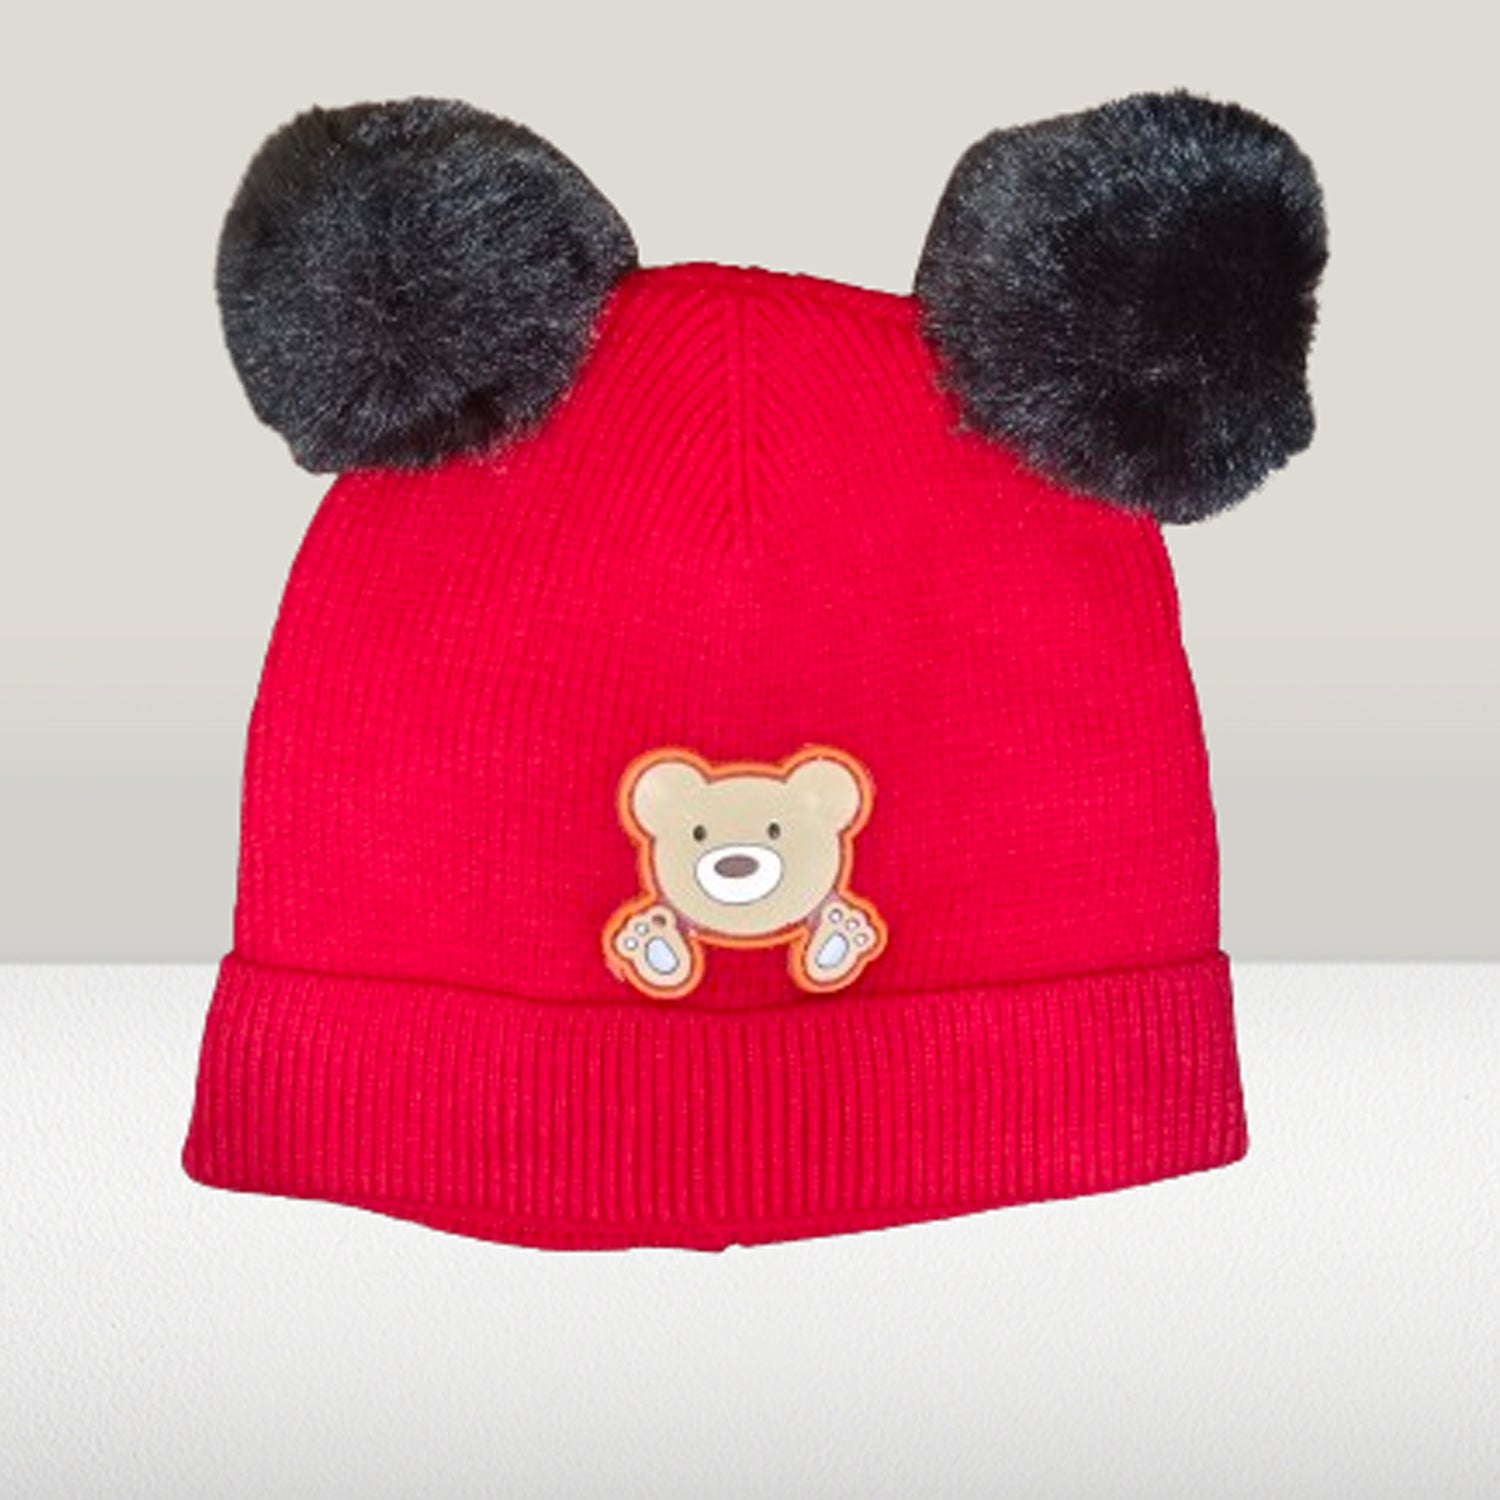 KIDDIE brand Kids Cotton Slouchy Beanie Cap for Baby Boy Girls Soft Knit Summer Hat | Unisex Skull Sleep Cap (Age 1-5 Years)